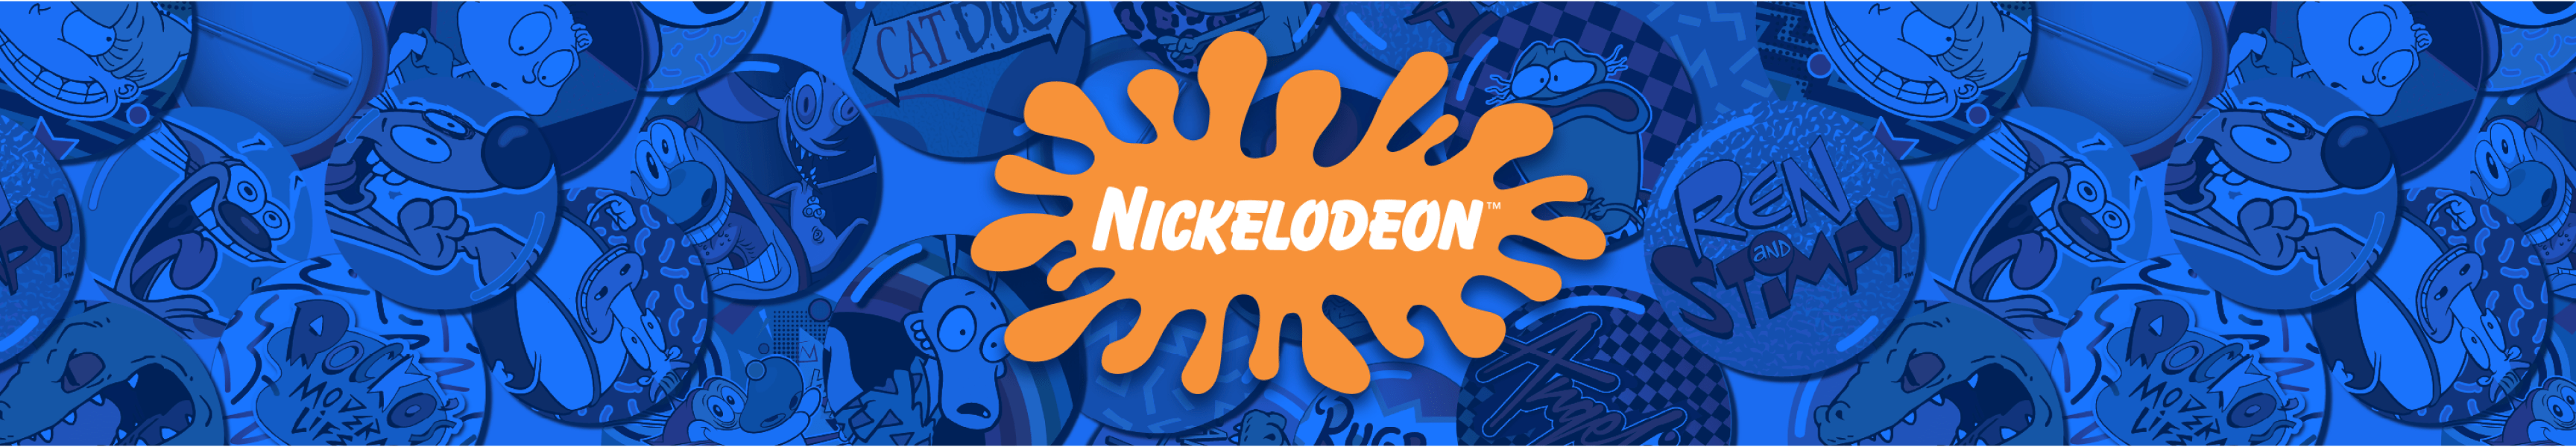 Retro Nickelodeon